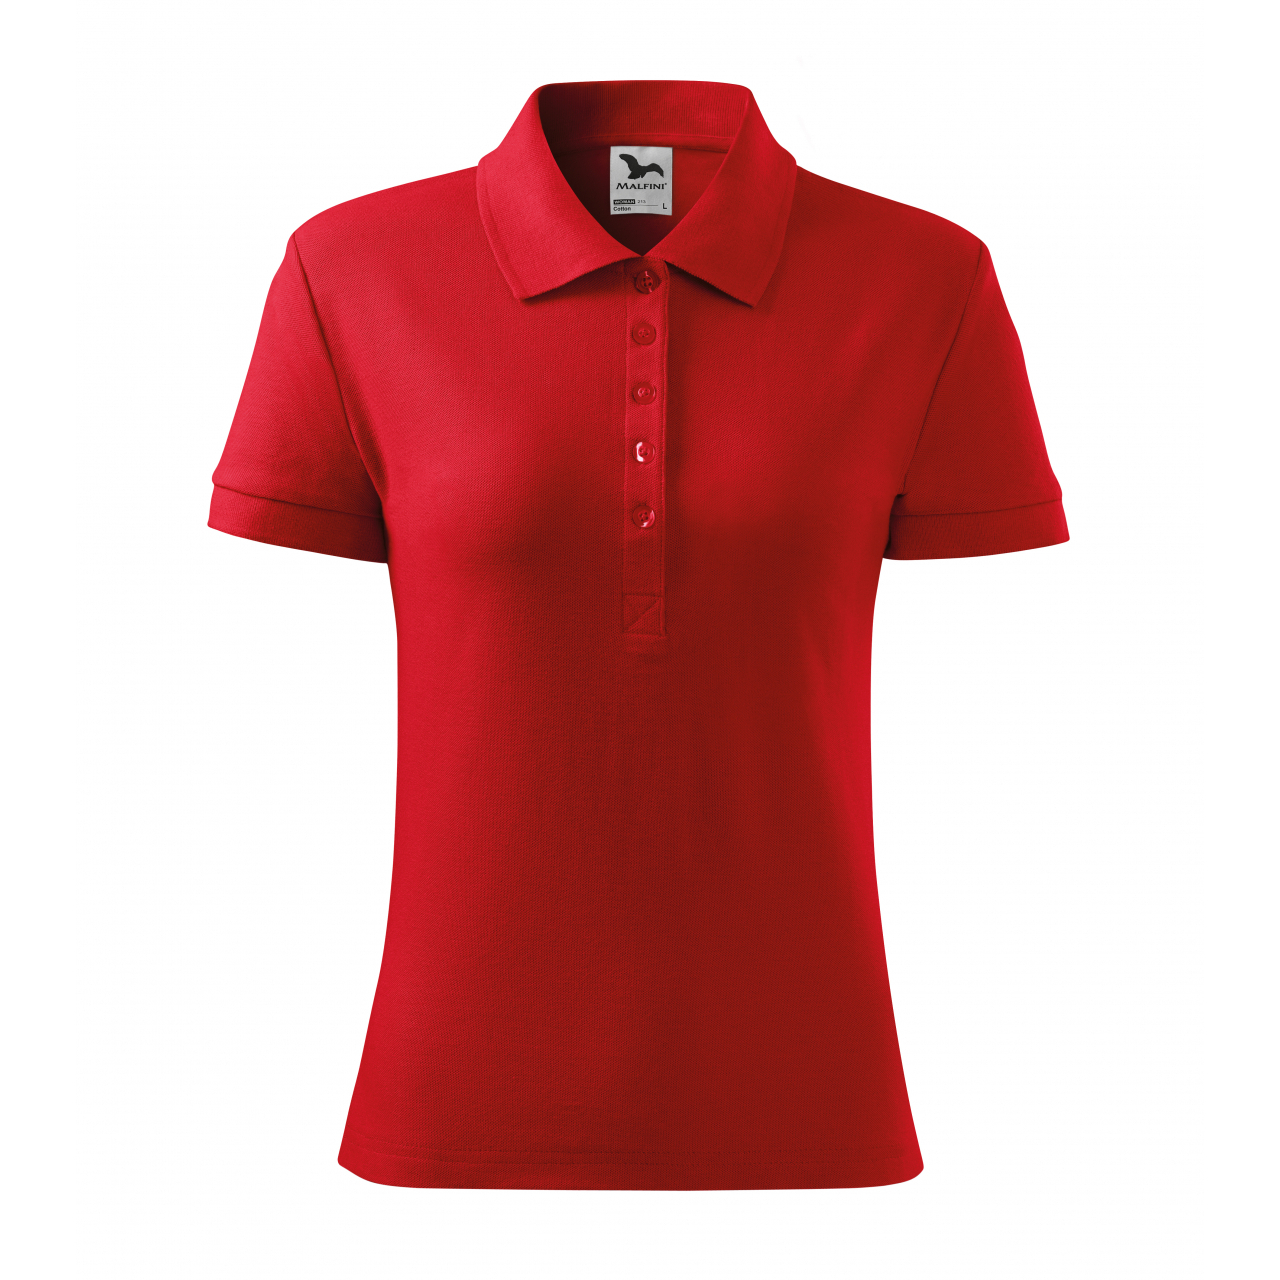 Polokošile dámská Malfini Cotton - červená, XL